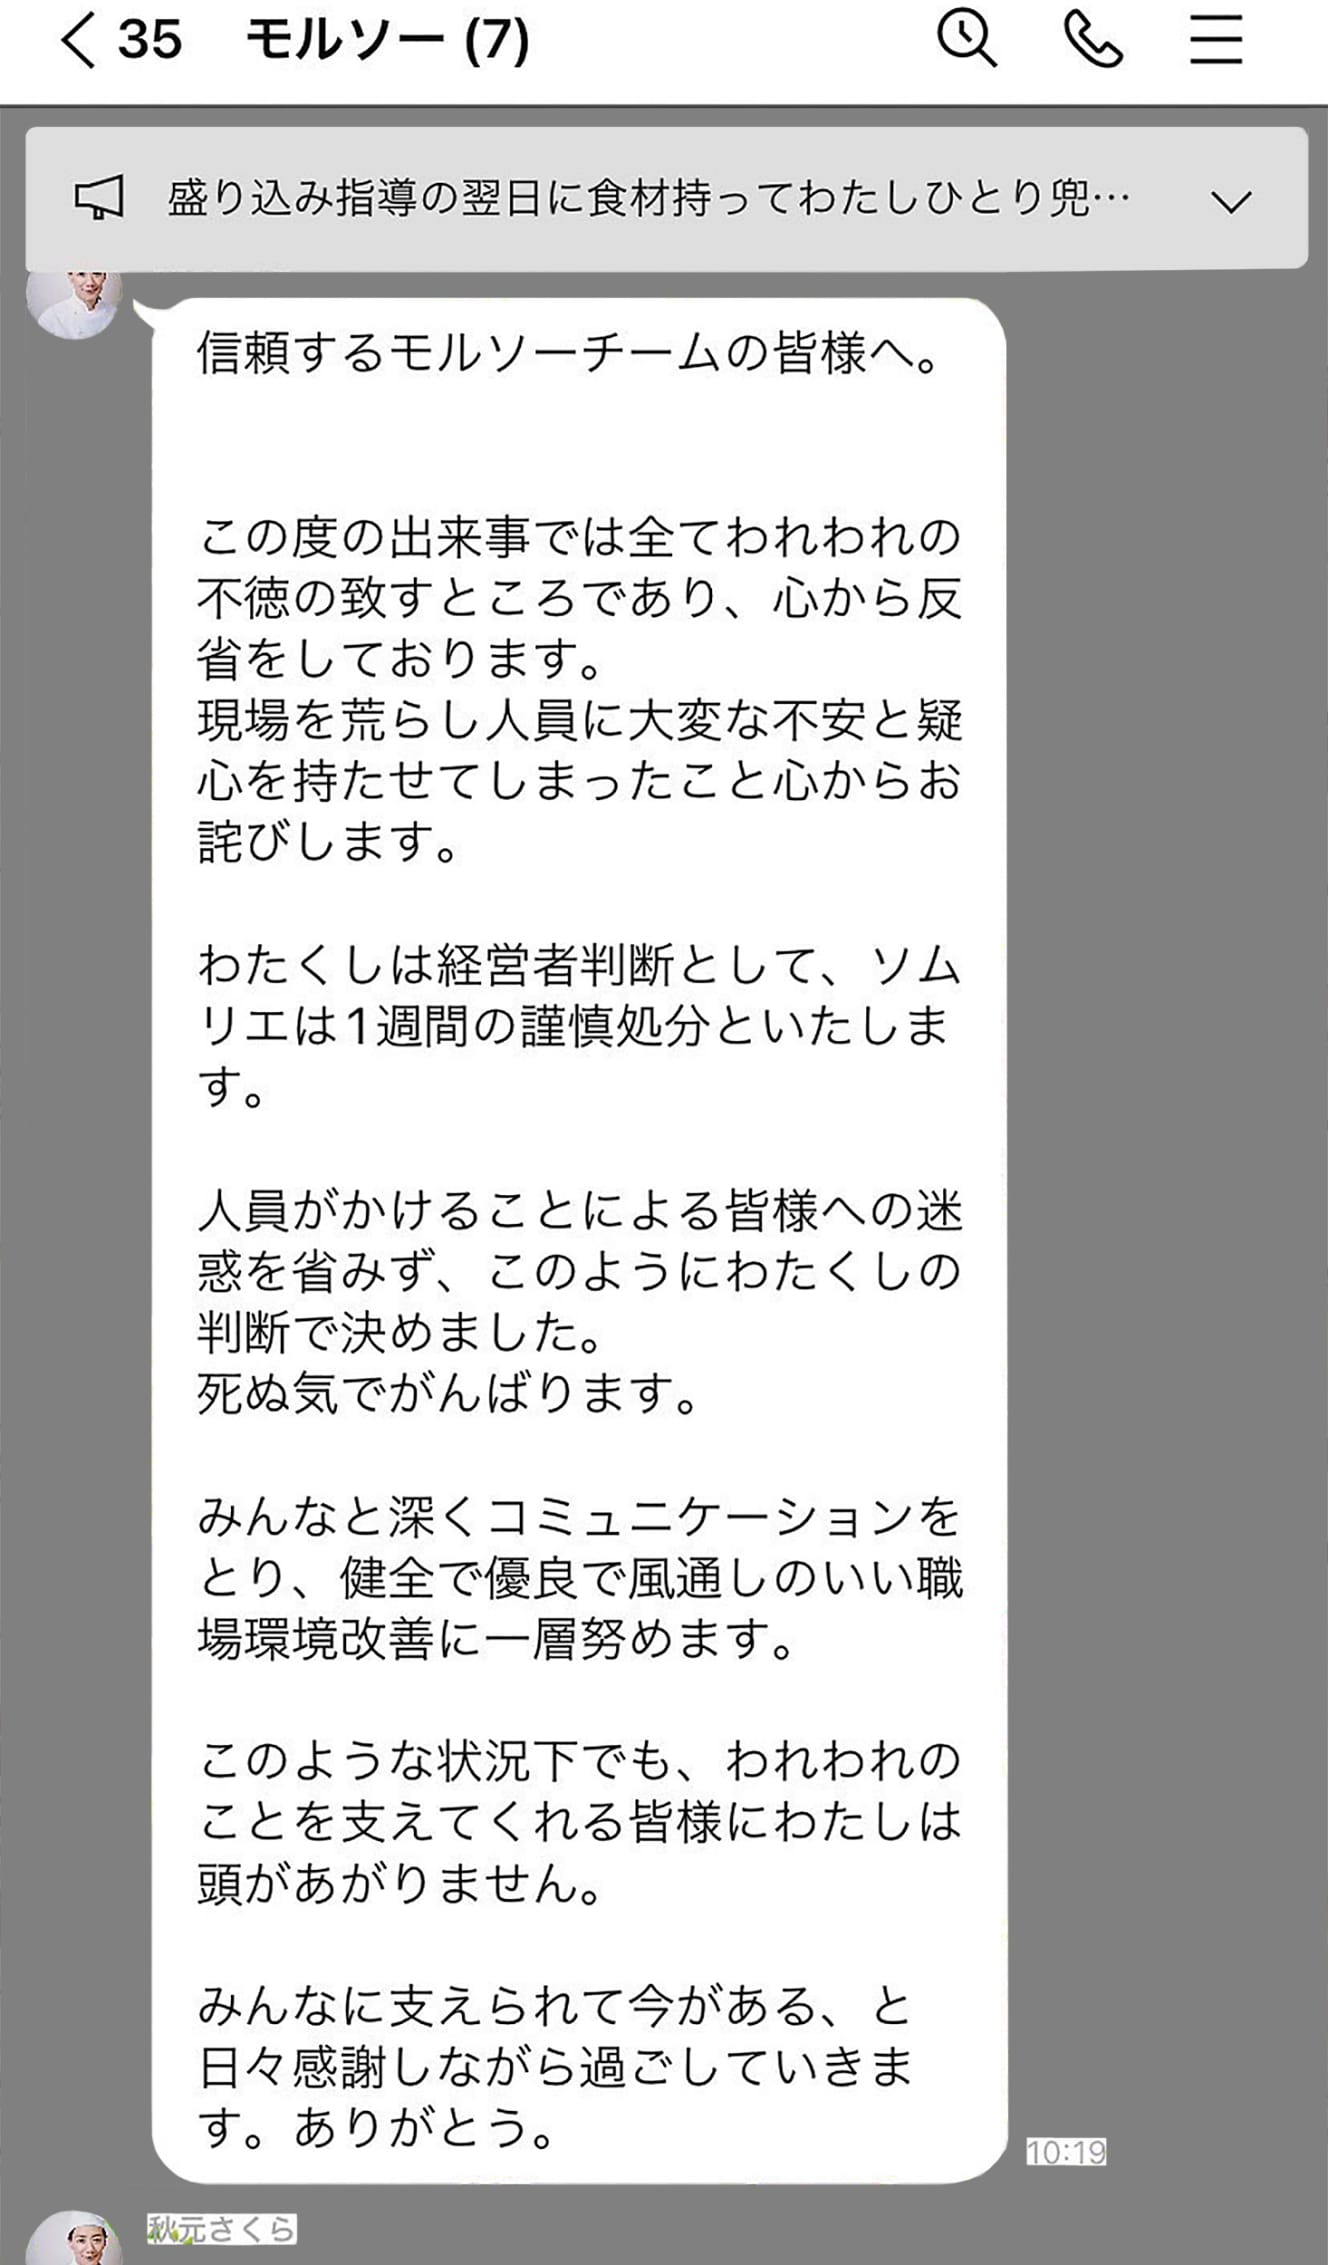 セクハラで辞職者が出たあと、秋元氏が『モルソー』のグループLINEで従業員に送付した謝罪のメッセージ